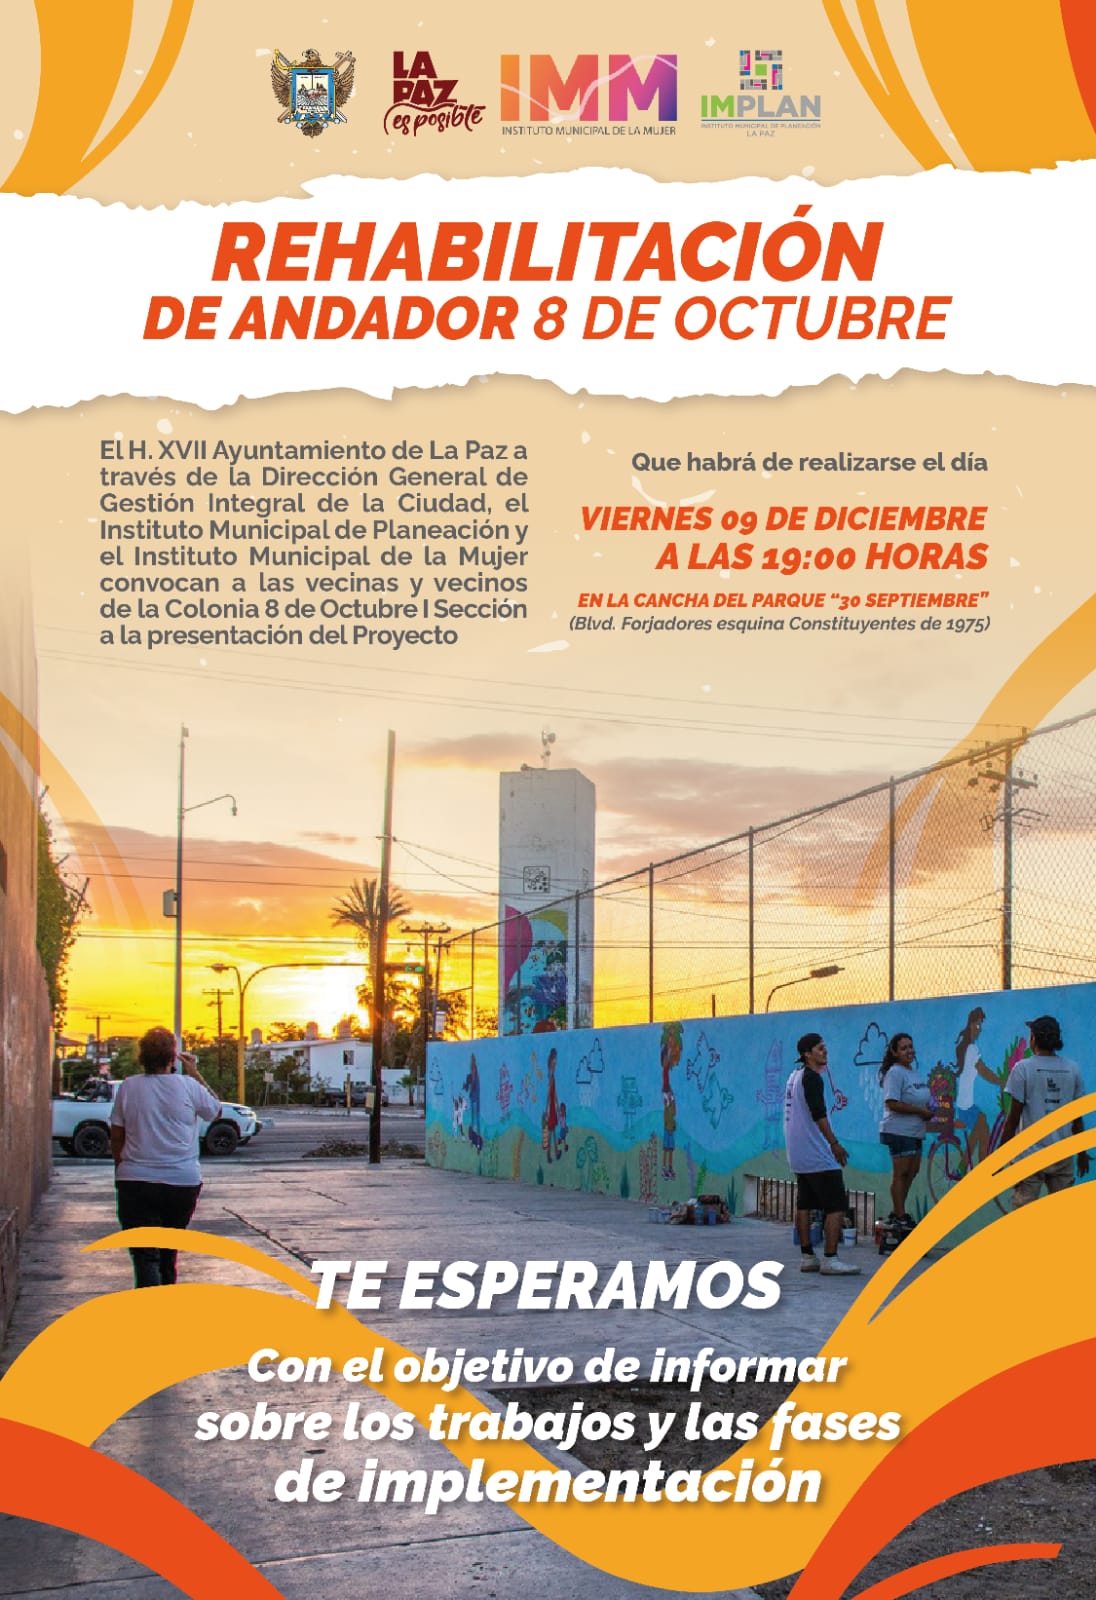 Invita Ayuntamiento a la presentación del Proyecto de Rehabilitación del Andador 8 de Octubre